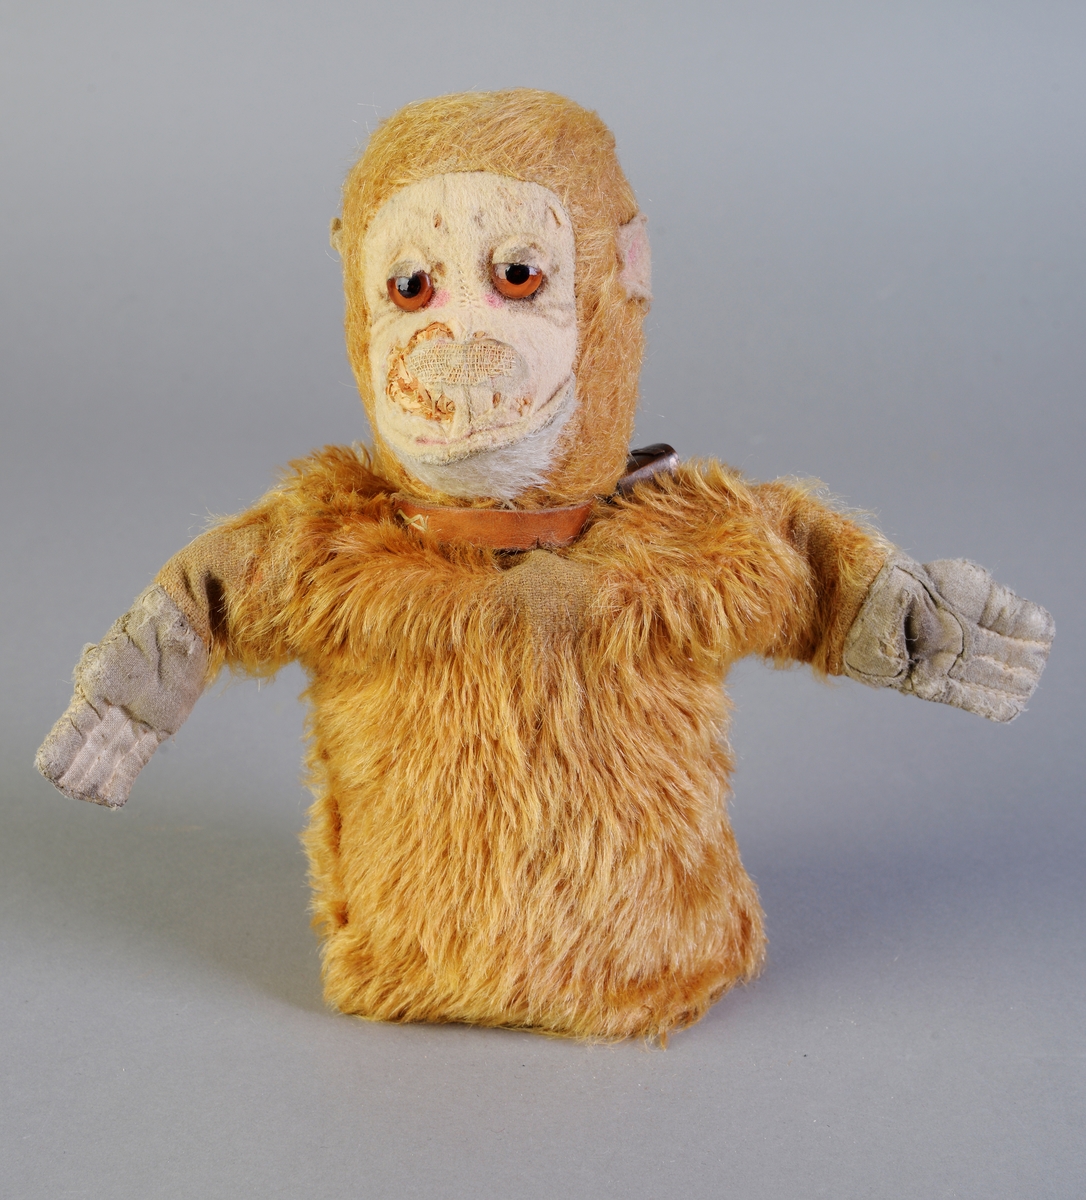 En fingerdukke som er en apekatt som er laget av brunoransje kunstpels. Hendene er laget av bomullsstoff, mens ansiktet og ørene er laget av filt. Øynene er laget av glass. Hodet er fylt med trespon. Den er ganske slitt og er ødelagt i ansiktet. Rundt halsen har den en skinnreim med bjelle på. Denne ble satt på senere (pers. med.), og det er antageligvis en souvenir som er brukt (siden det står "Rena" på bjellen.